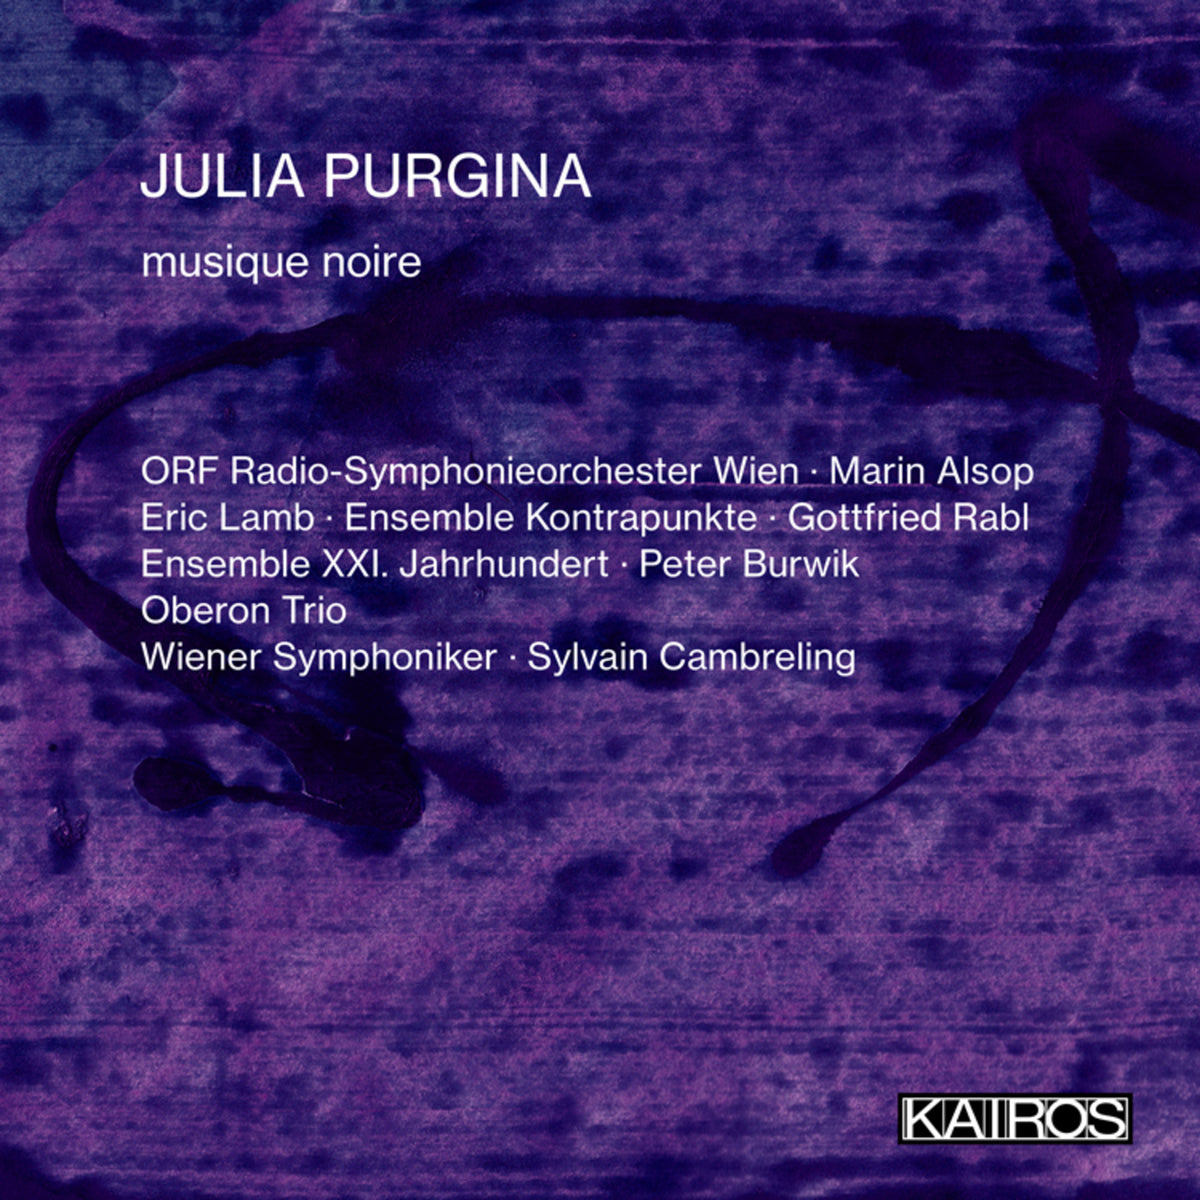 Julia Purgina - musique noire - KAI0022002